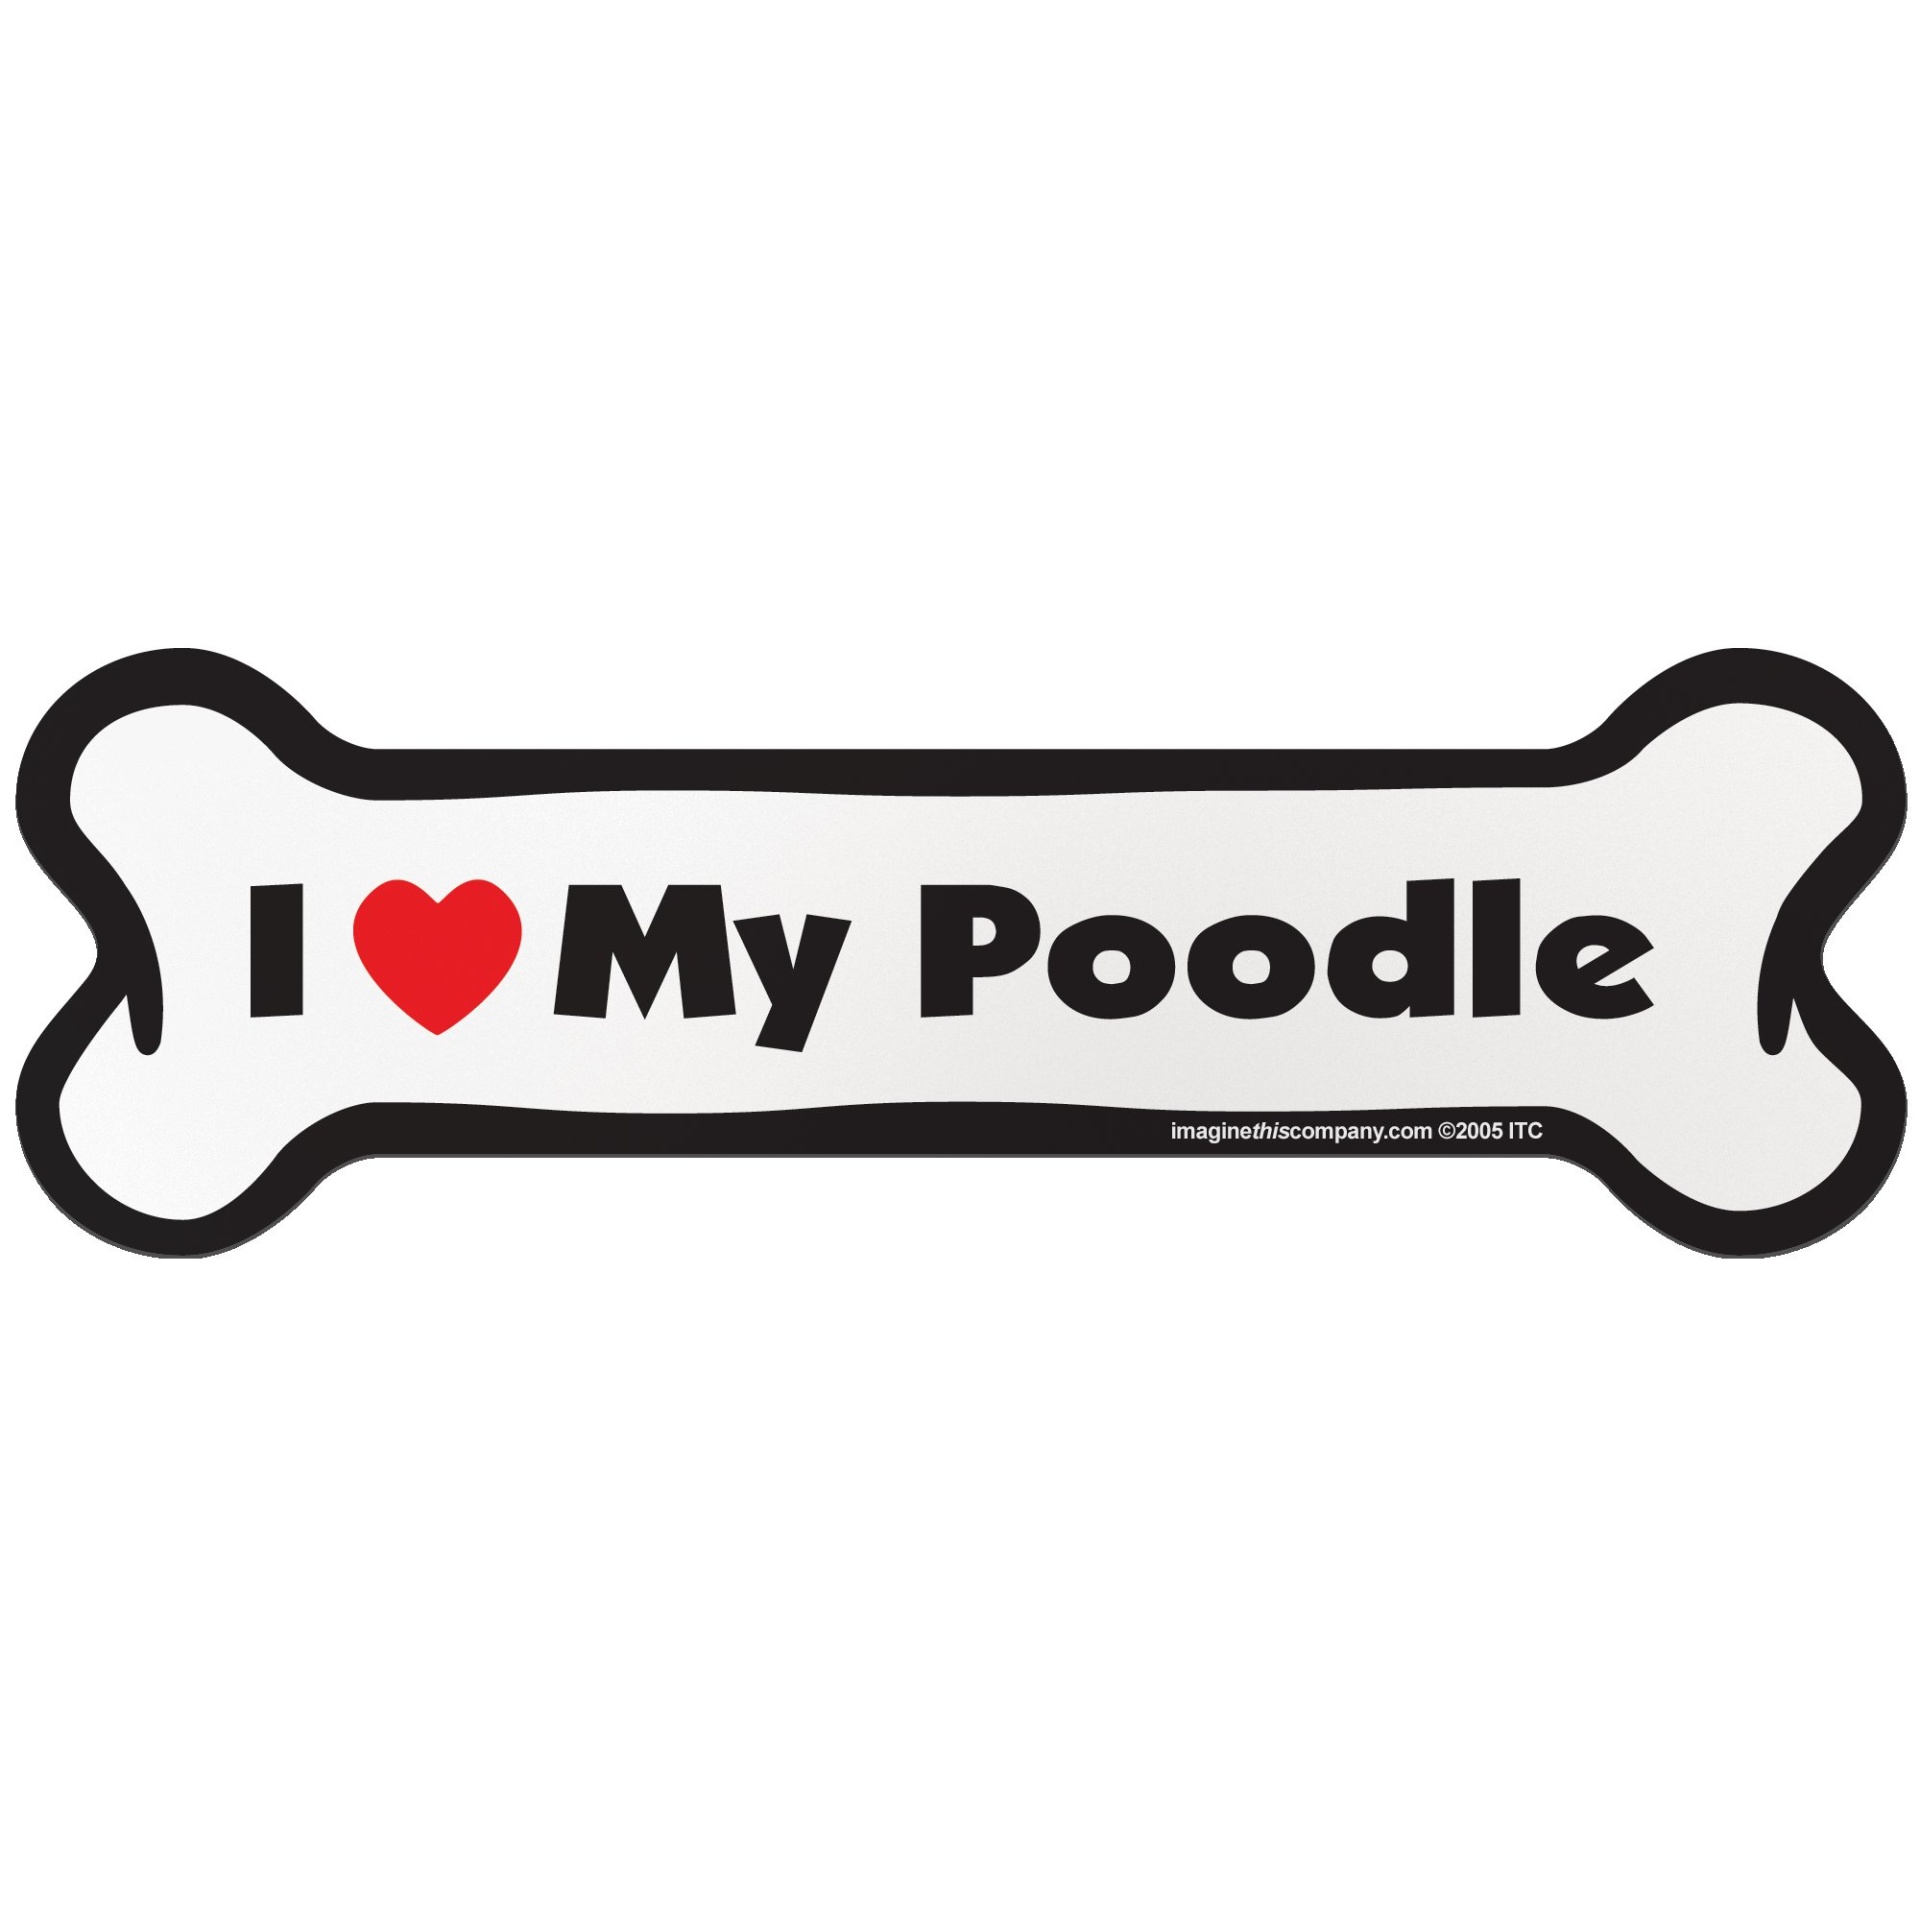 slide 1 of 1, Imagine This "I Love My Poodle" Bone Car Magnet, SM